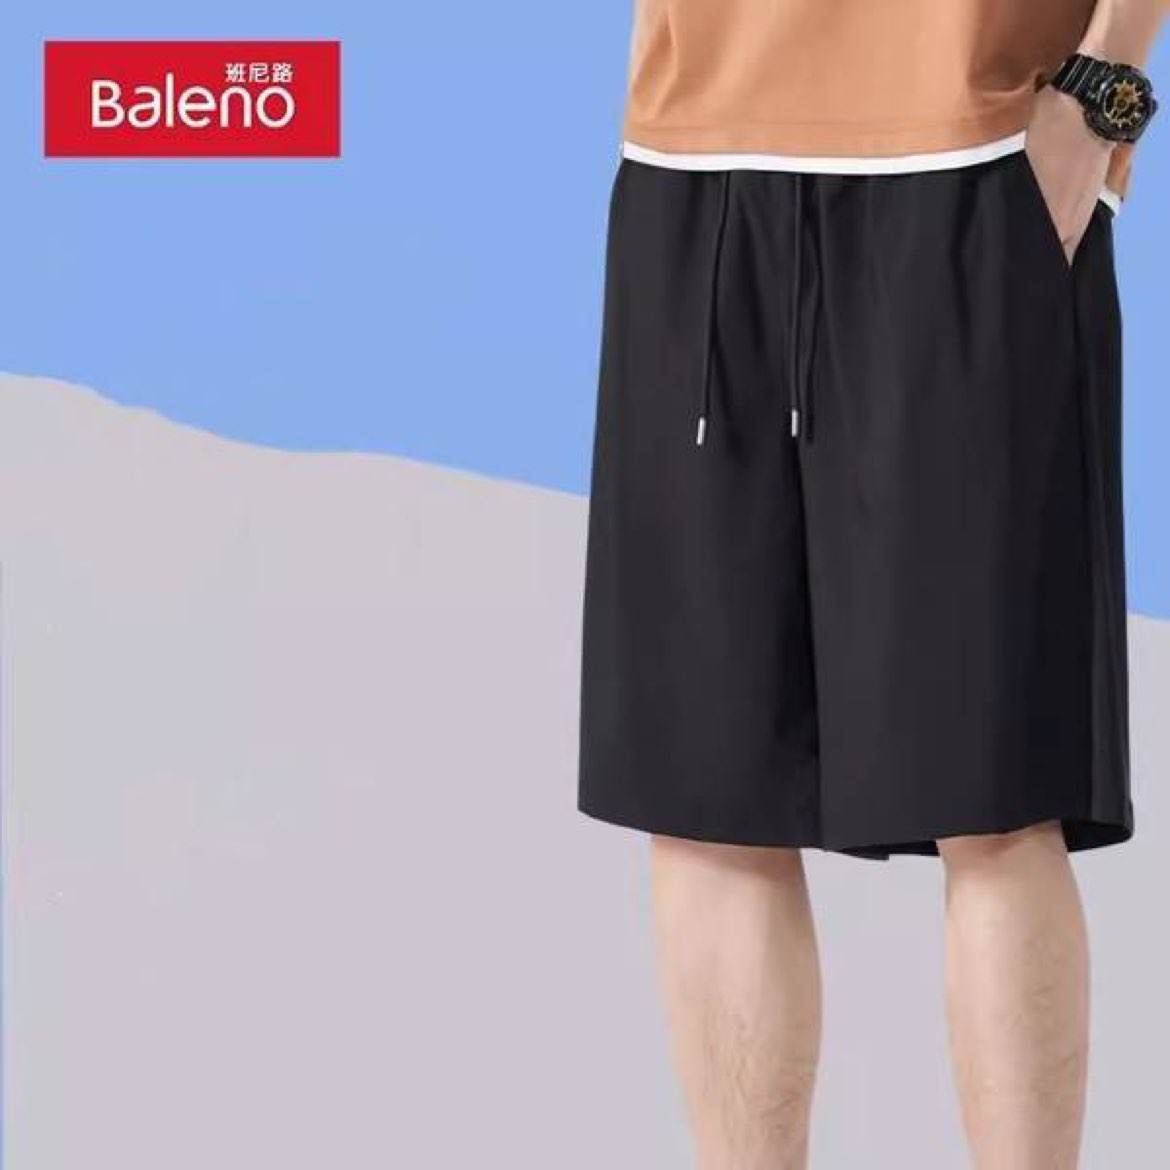 Baleno 班尼路 男士速干运动短袖/短裤 任选2件 49.8元包邮（合24.9元/件）